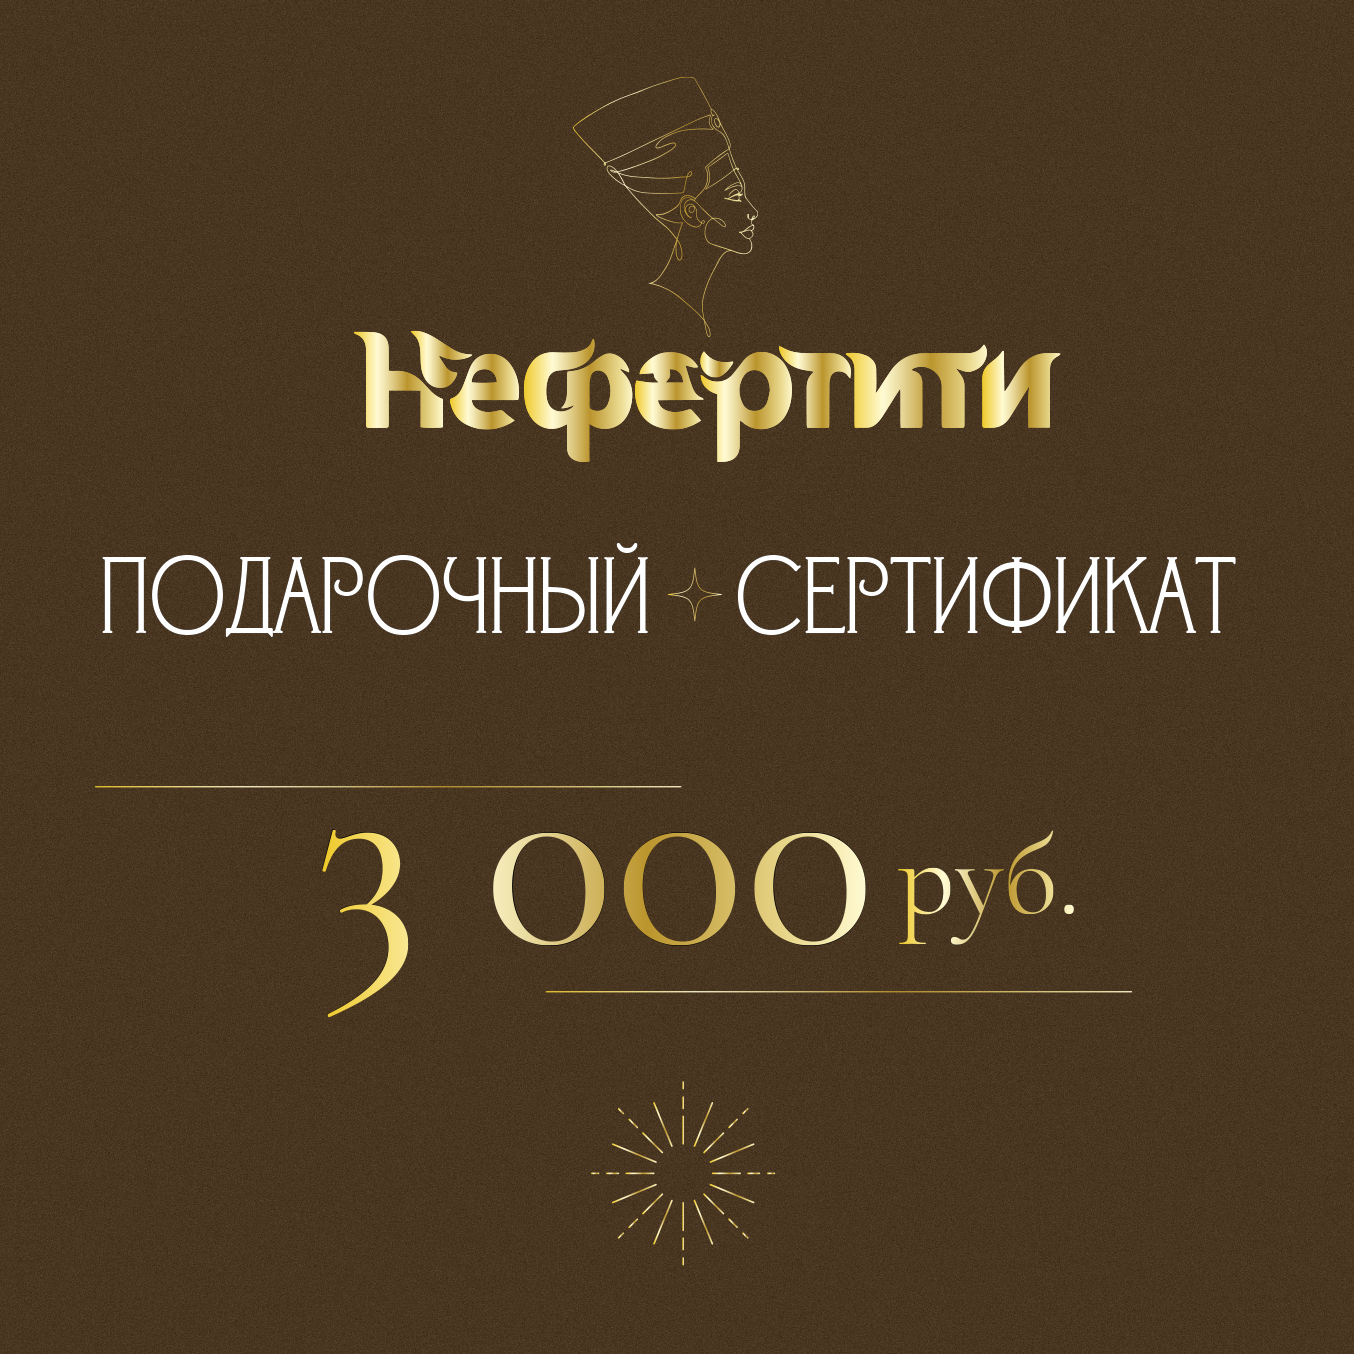 Сертификат Нефертити 3000р